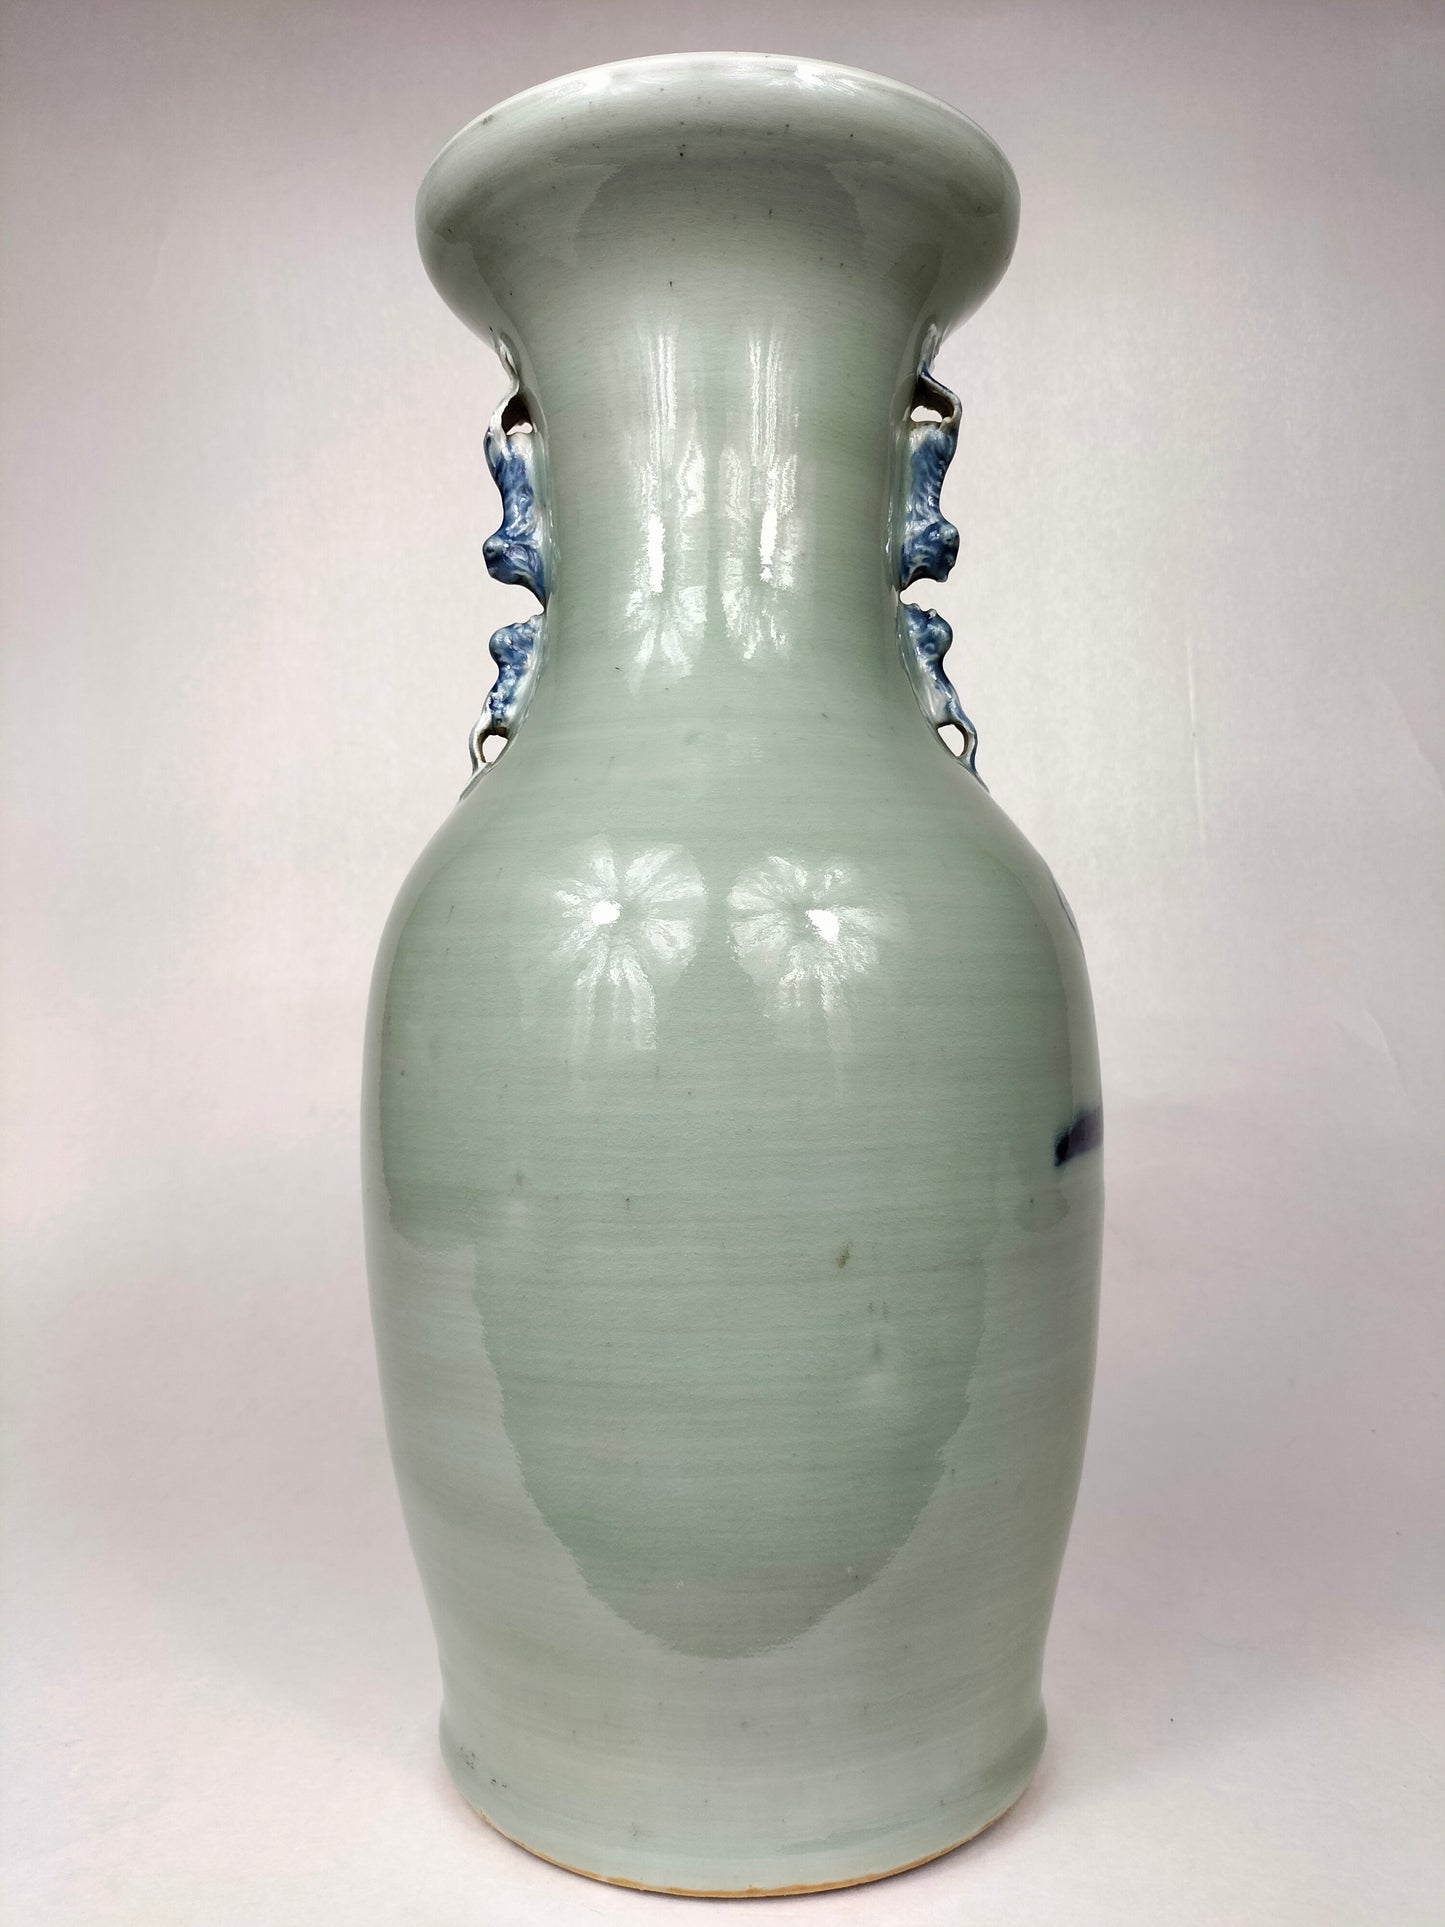 古色古香的中国瓷器花瓶装饰有圣人 // 清朝 - 19 世纪